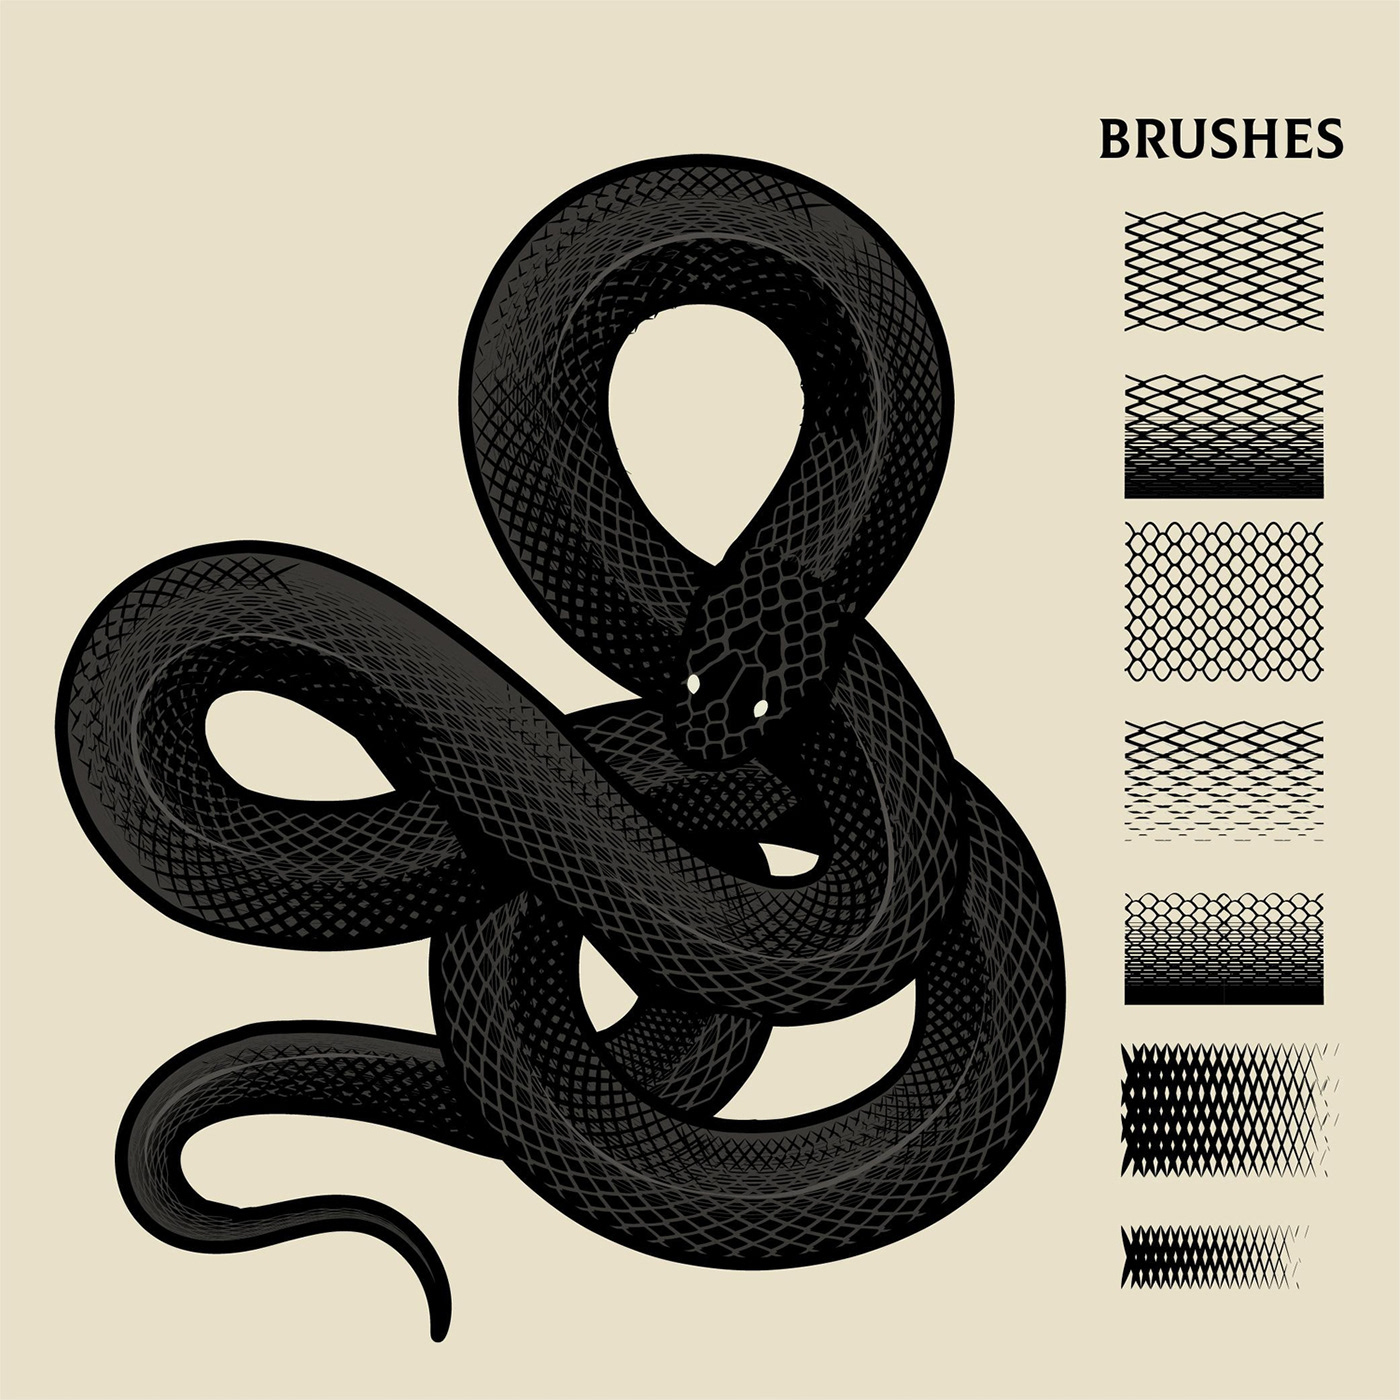 brush design skin snake texture aesthetic dark music vinyl Vinyl Cover